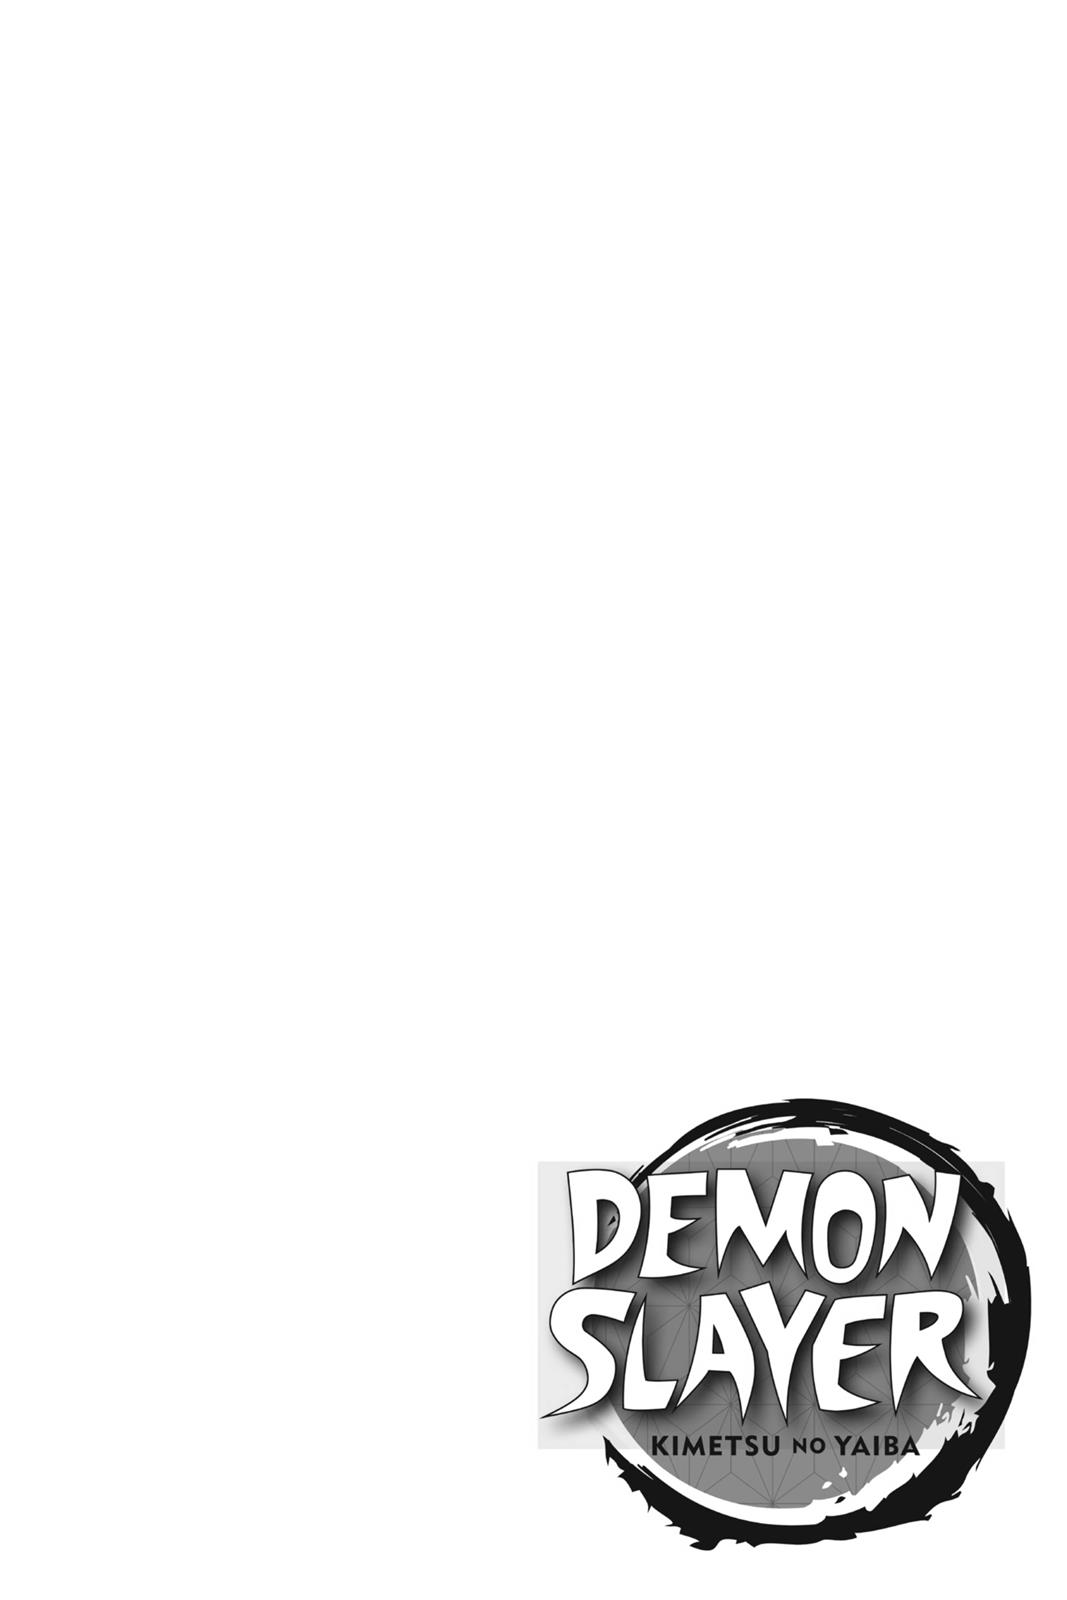 Demon Slayer Manga Manga Chapter - 87 - image 3